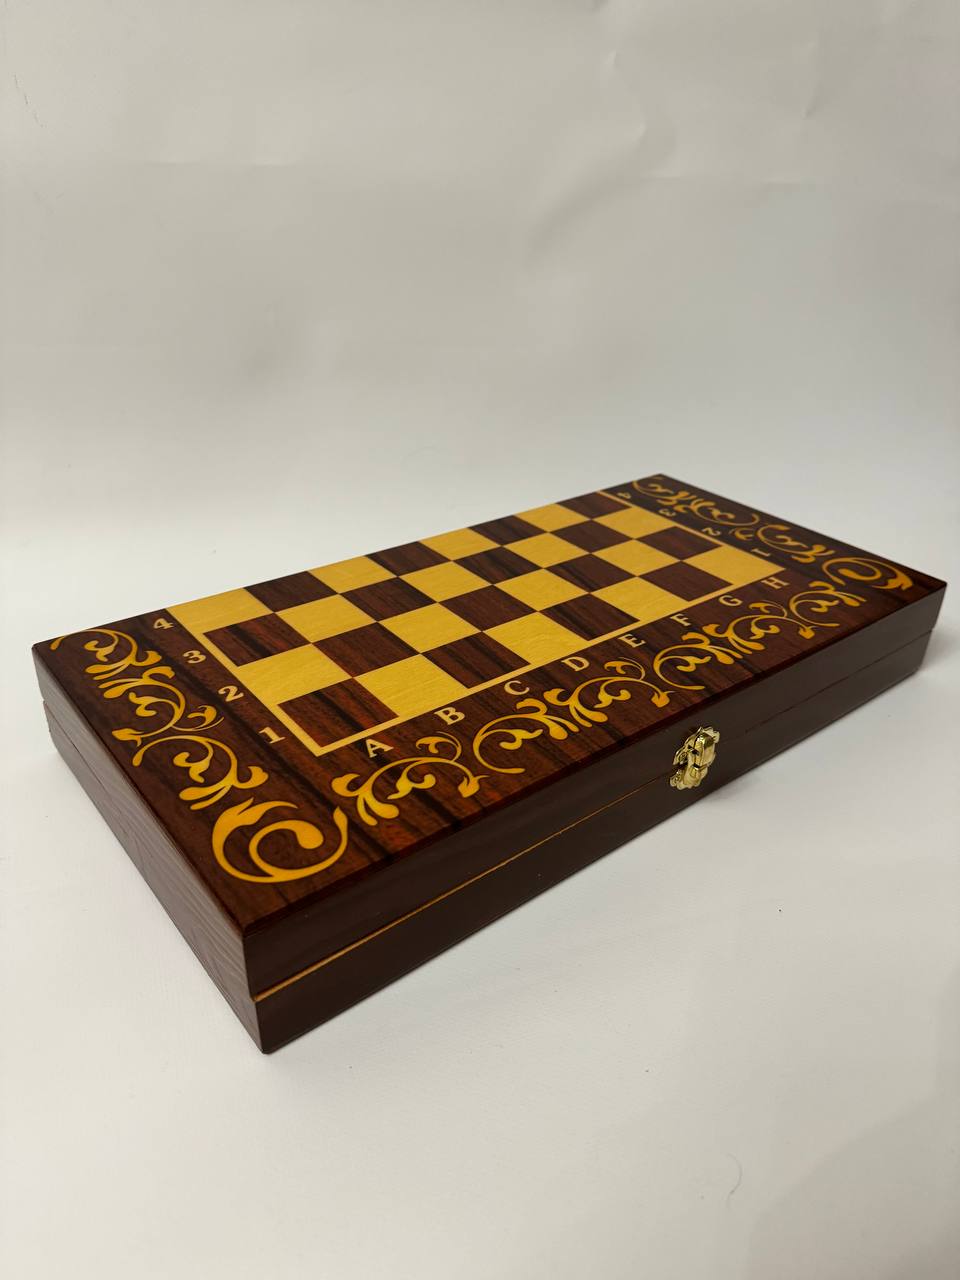 Нарды, шахматы, шашки МИР ШАХМАТ Подарочные 3 в 1 из дерева Премиум качество, 40 см